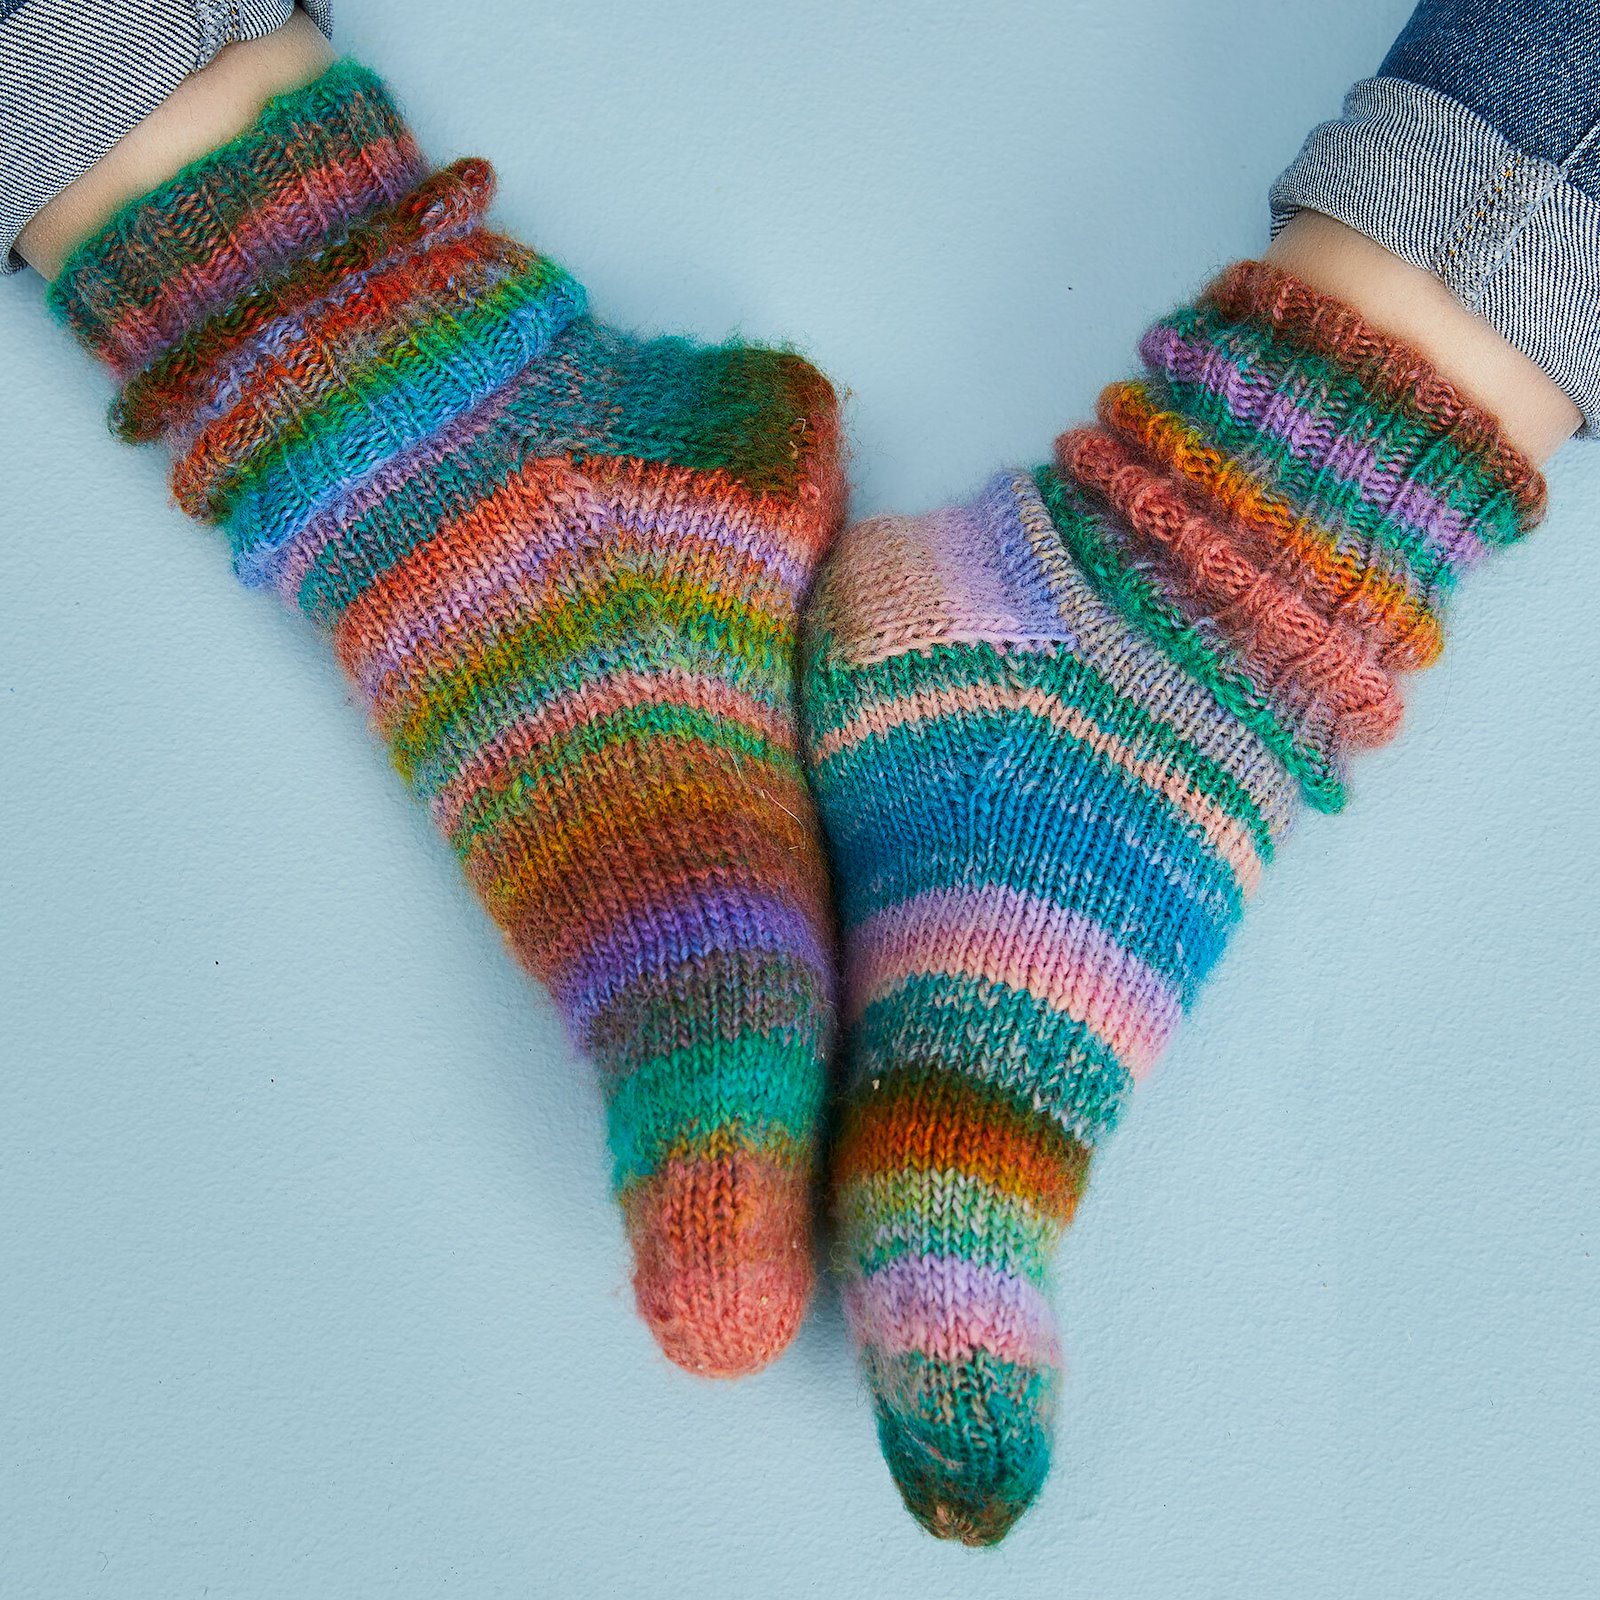 FRAYA strikkeoppskrift - Lazy Sunday Socks, accessories 90000106_fraya3007_sskit